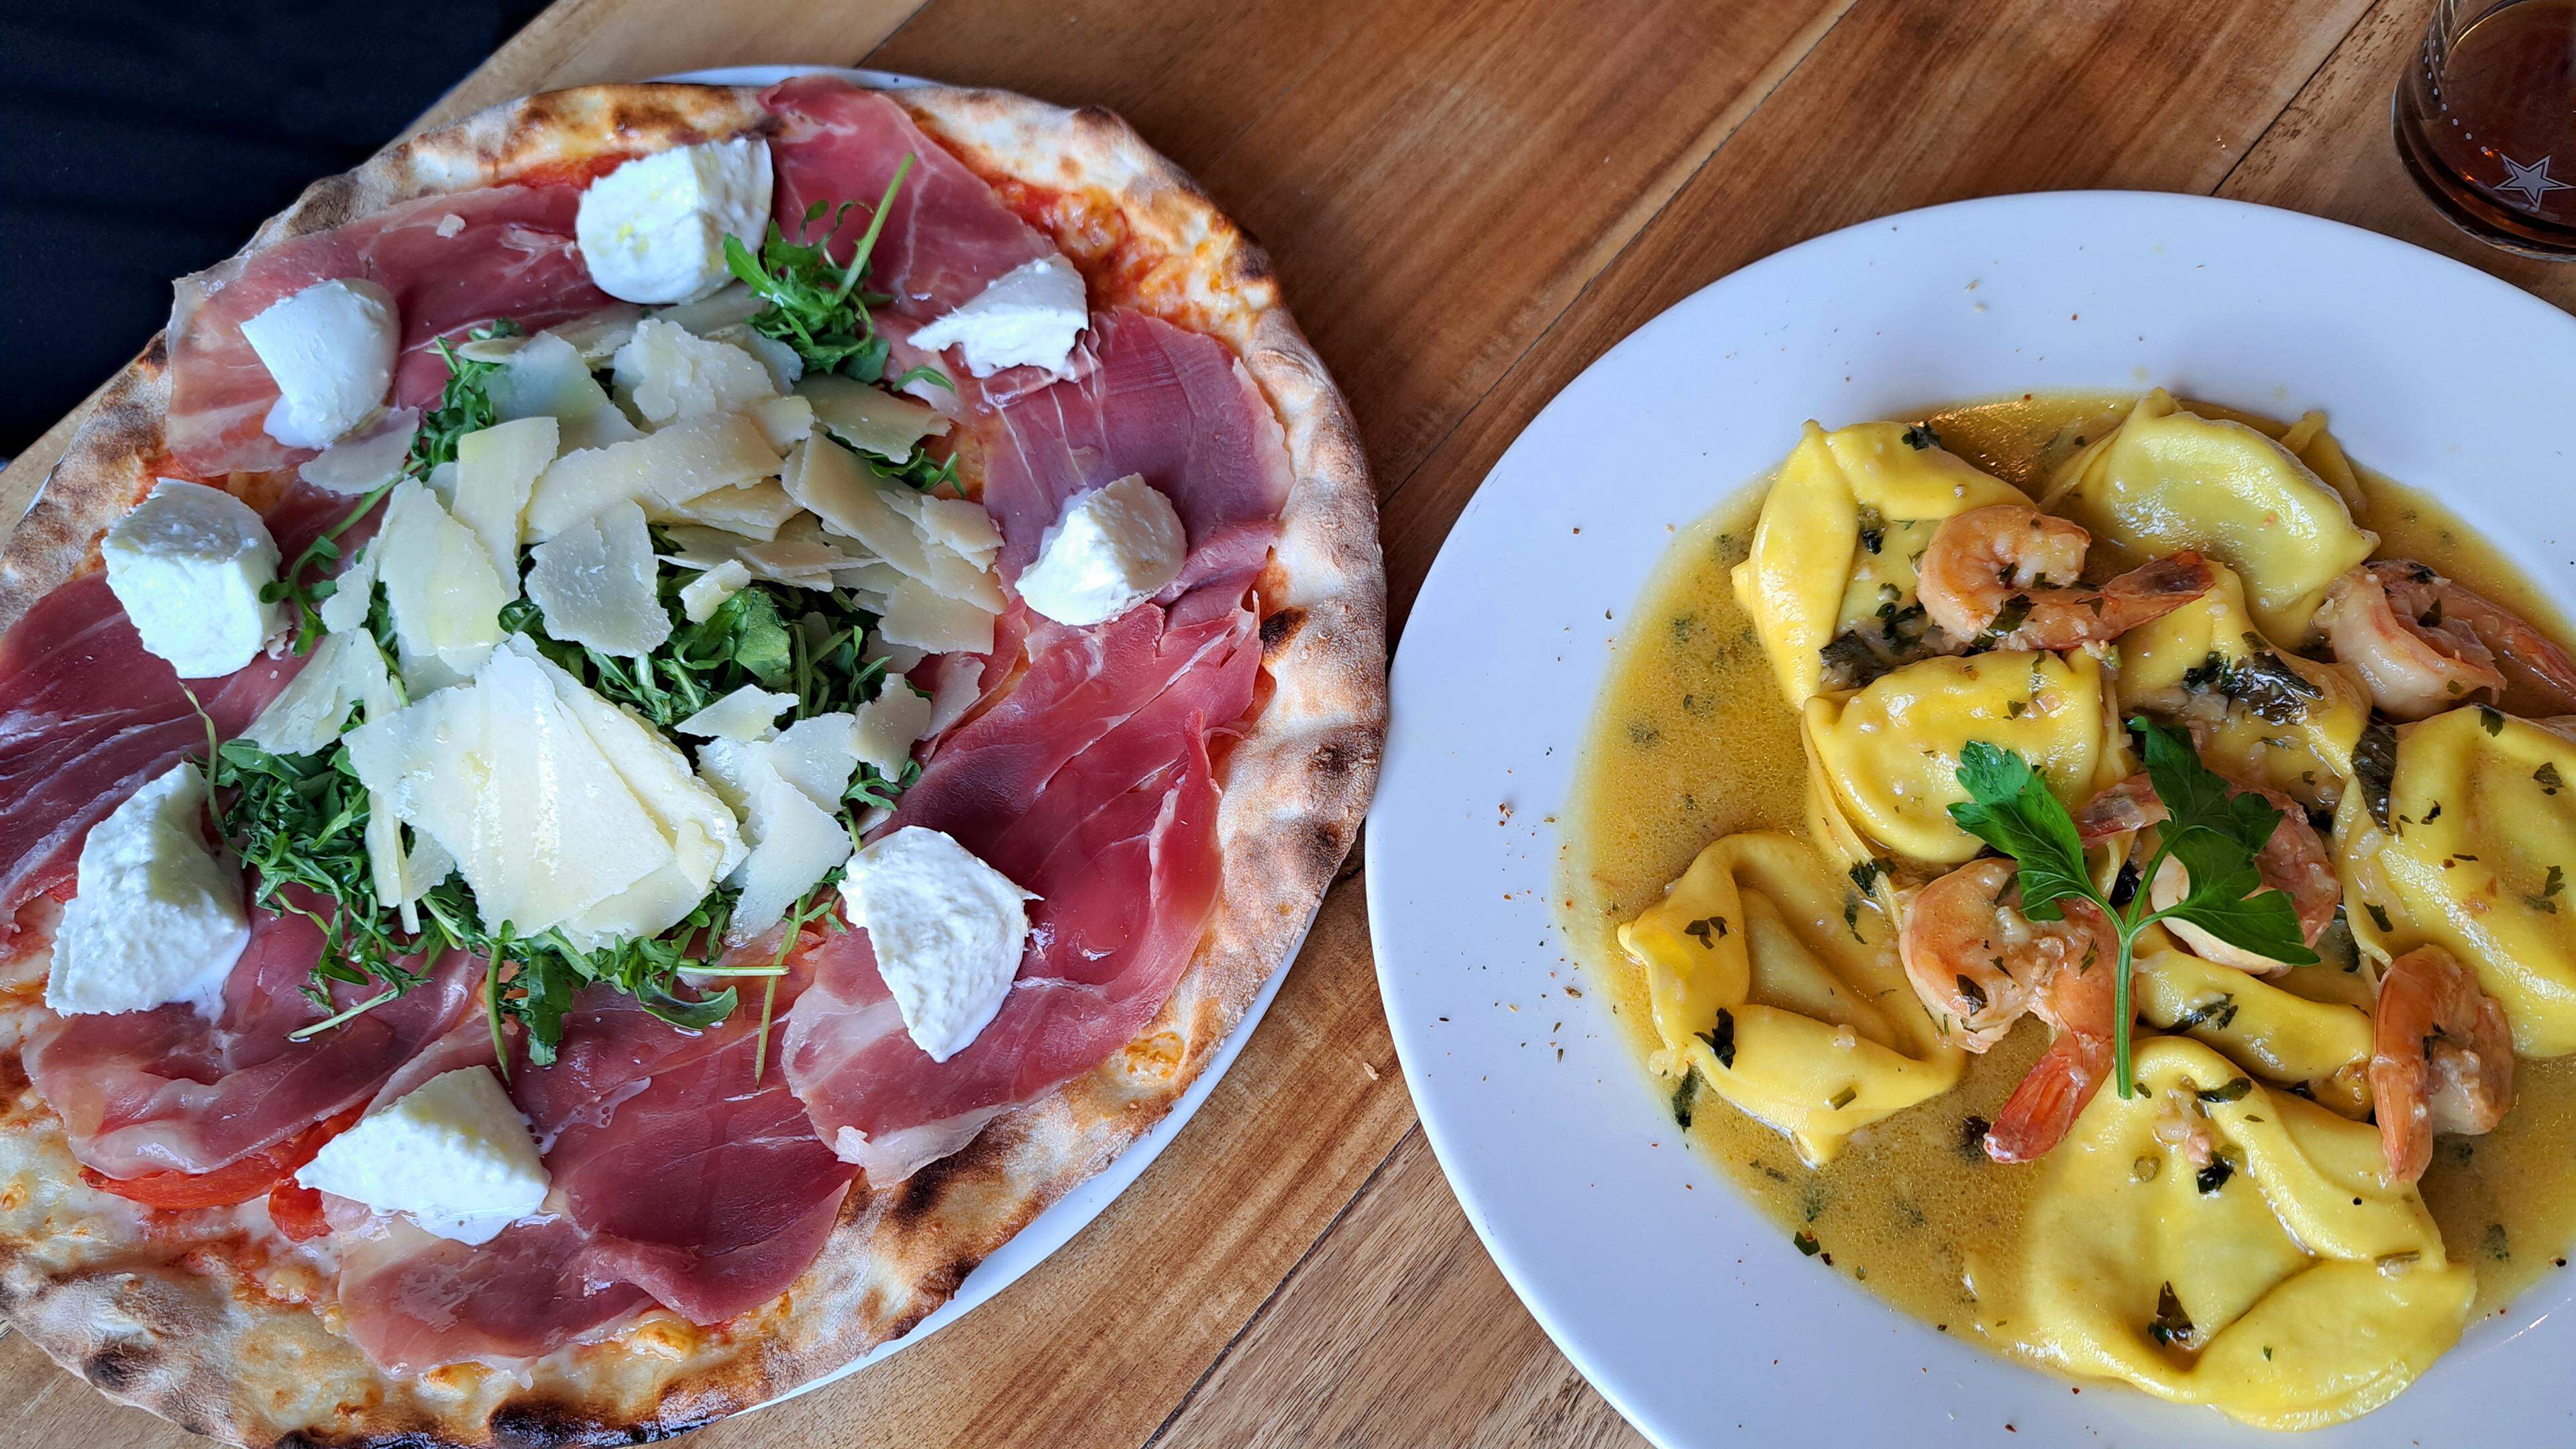 Die Pizza Miss Italia (l.) mundet auch Männern, während die mit Ricotta und Spargel gefüllte Pasta an Zitronensauce Liebhaber des Saisongemüses gefallen dürfte.